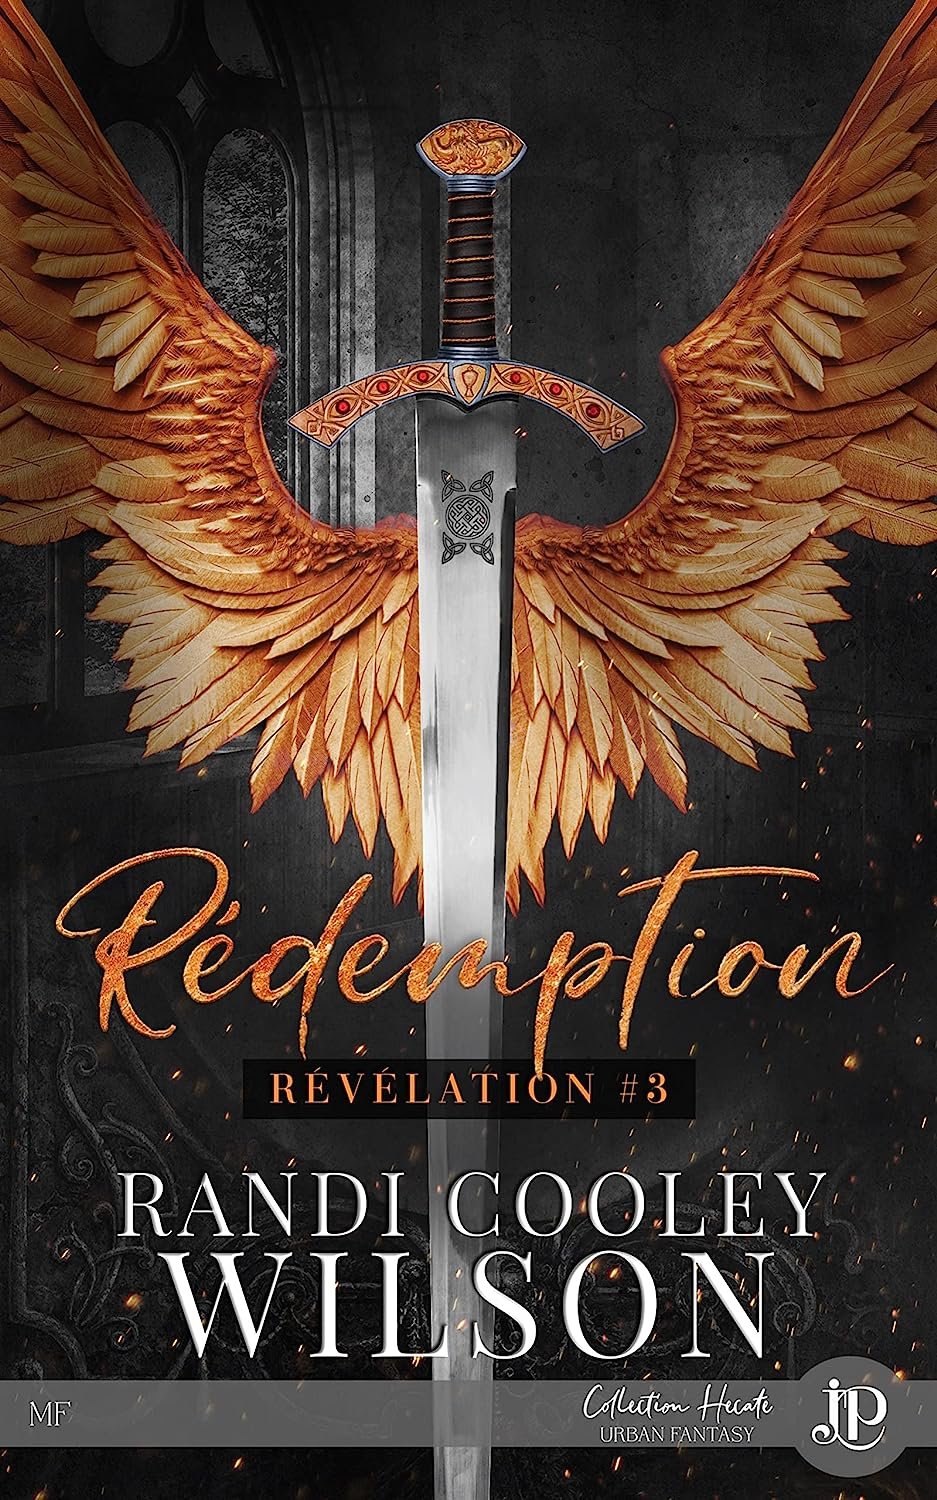 Randi Cooley Wilson - Rédemption : Révélation #3